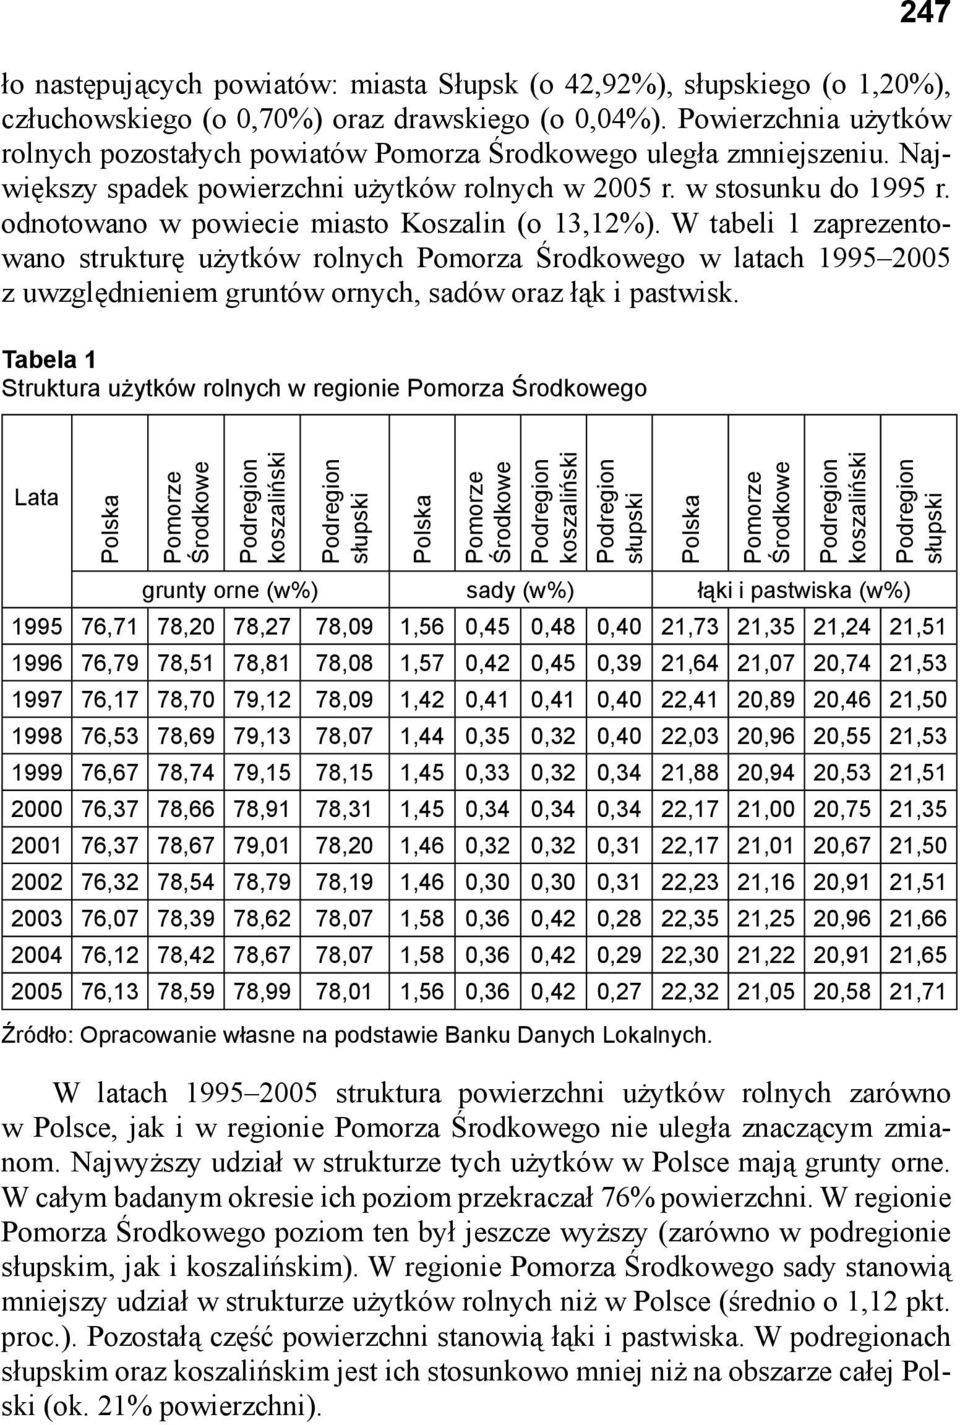 odnotowano w powiecie miasto Koszalin (o 13,12%). W tabeli 1 zaprezentowano strukturę użytków rolnych Pomorza Środkowego w latach 1995 2005 z uwzględnieniem gruntów ornych, sadów oraz łąk i pastwisk.